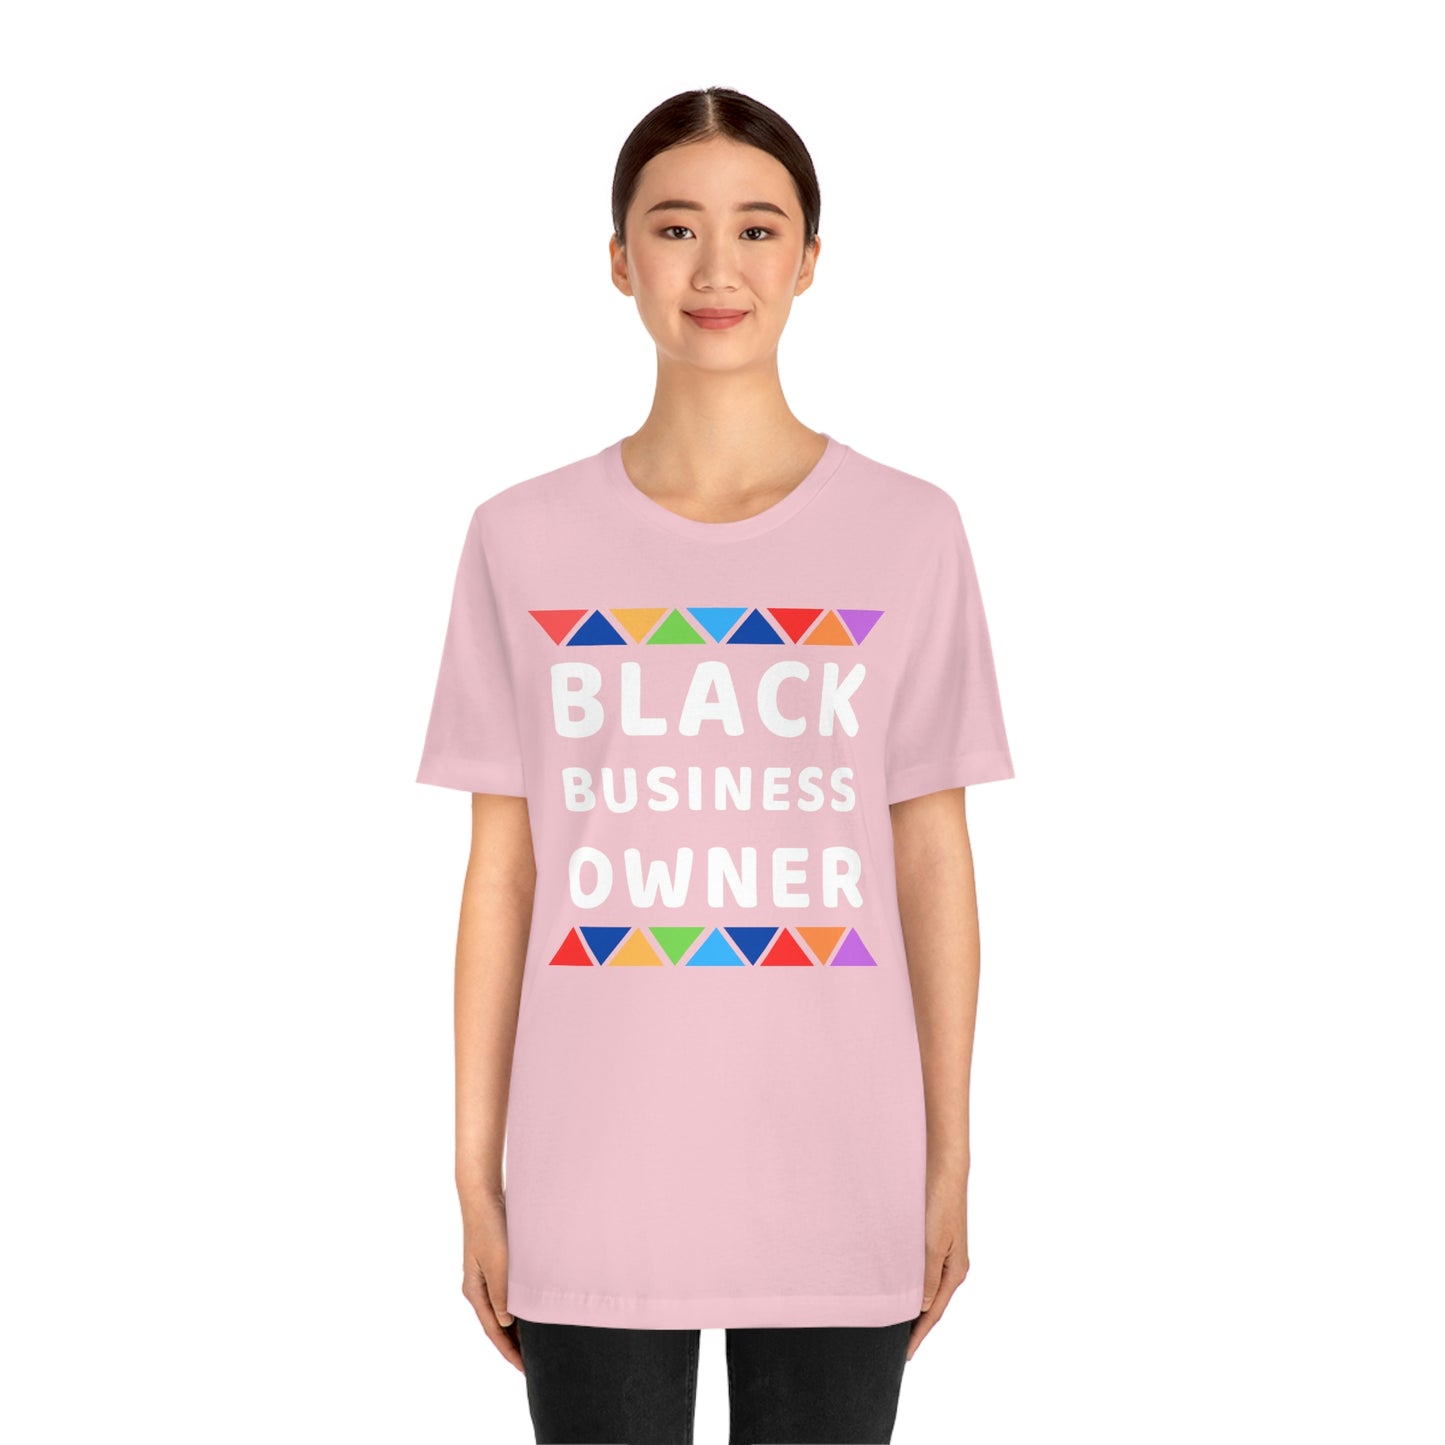 Black Business Owner shirt - Black entrepreneur shirt small business owner business owner gift CEO shirt, black owned shop